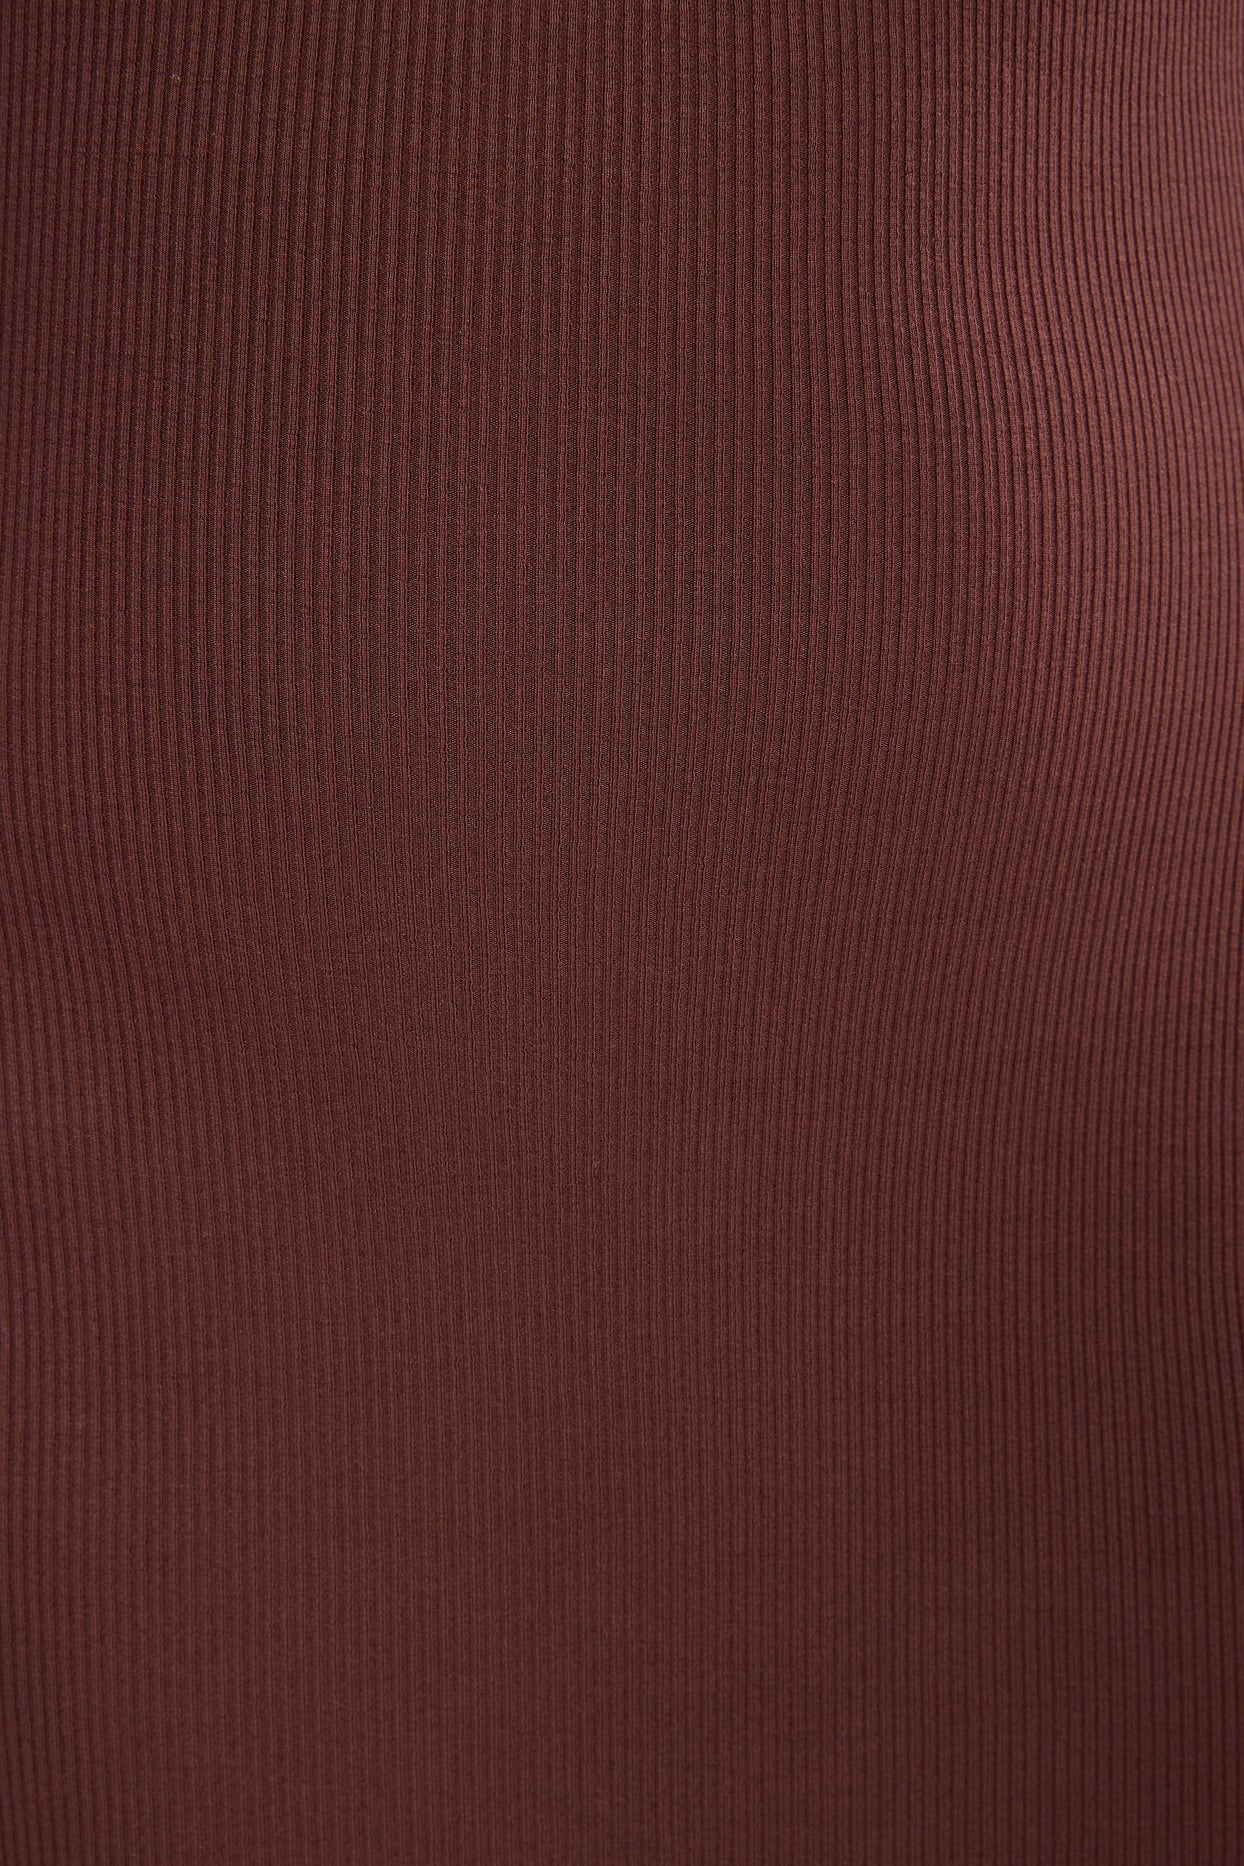 Vestido maxi modal canelado de manga comprida em chocolate